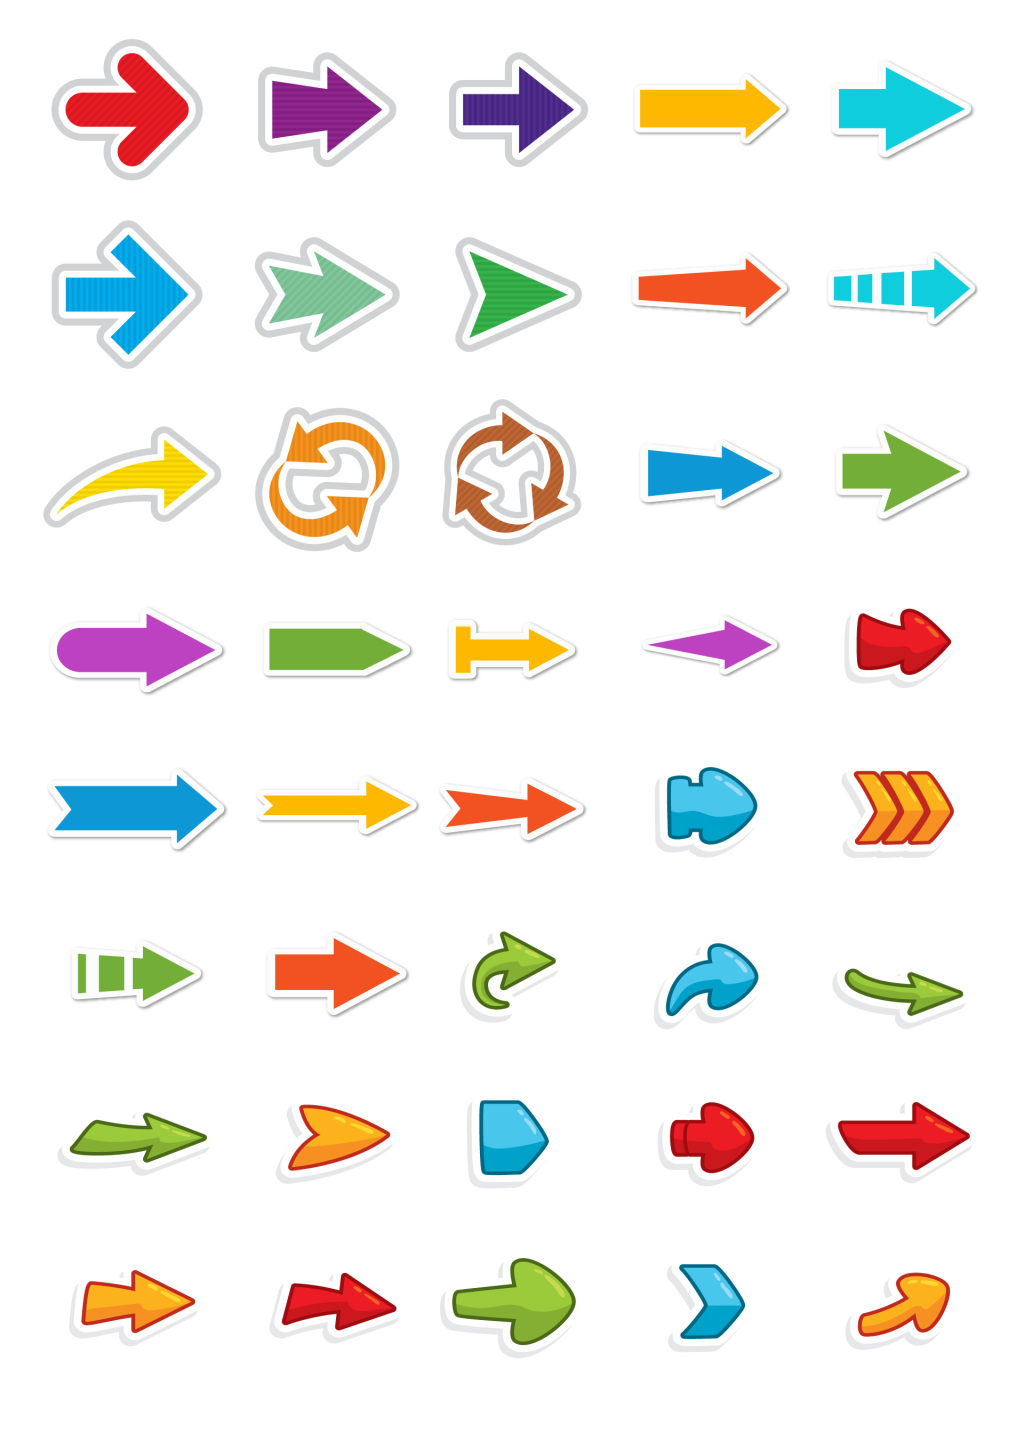 彩色箭头图标素材免费下载 - 觅知网